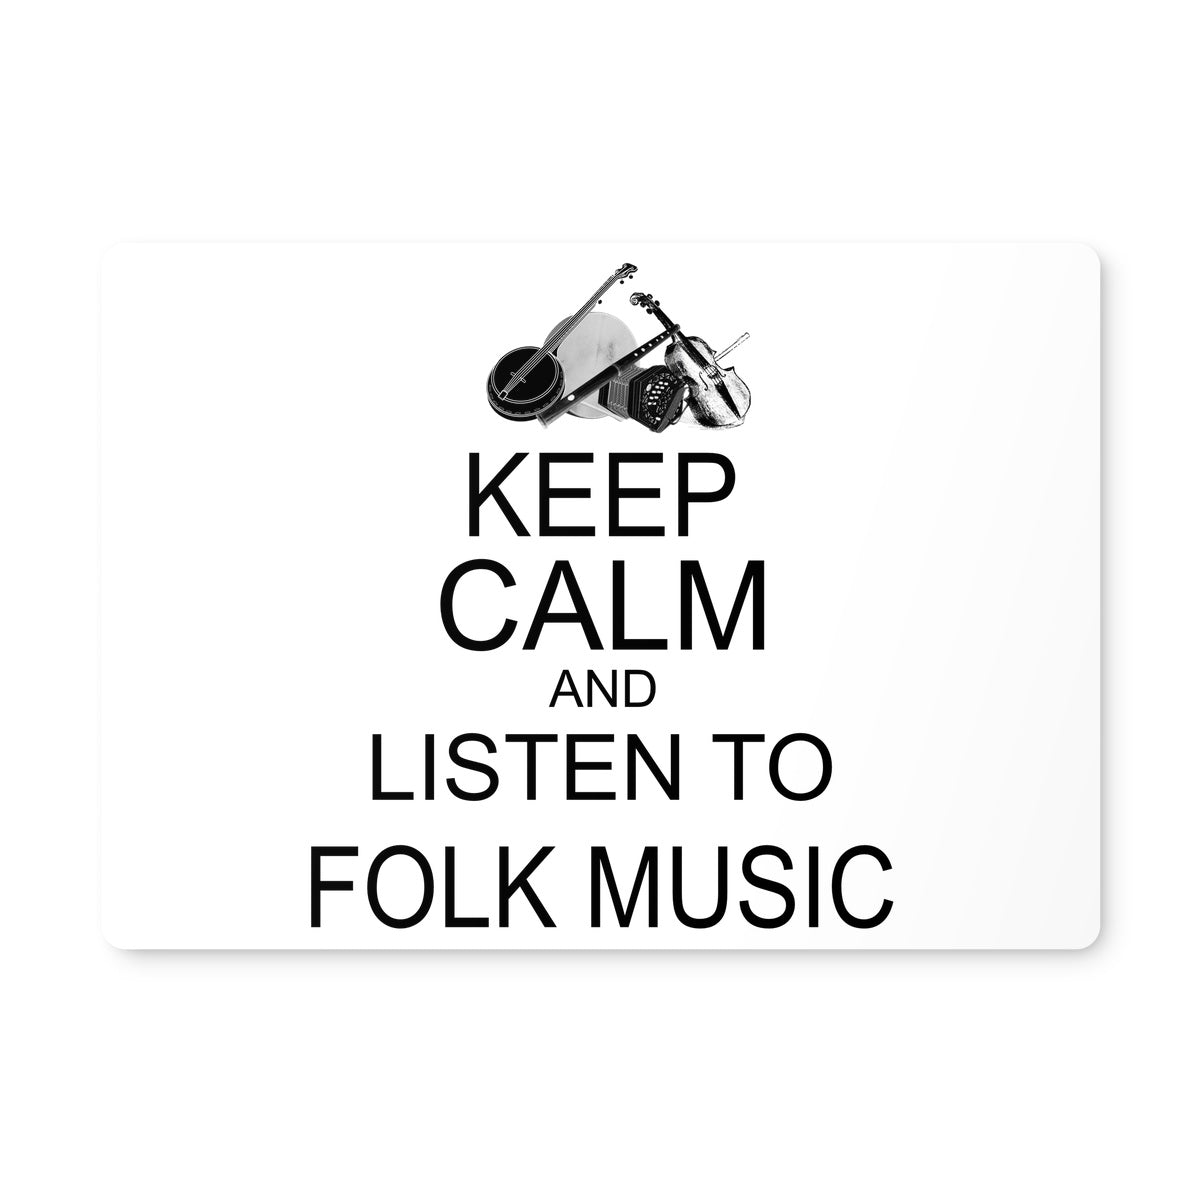 Keep Calm & Listen to Folk Music Placemat